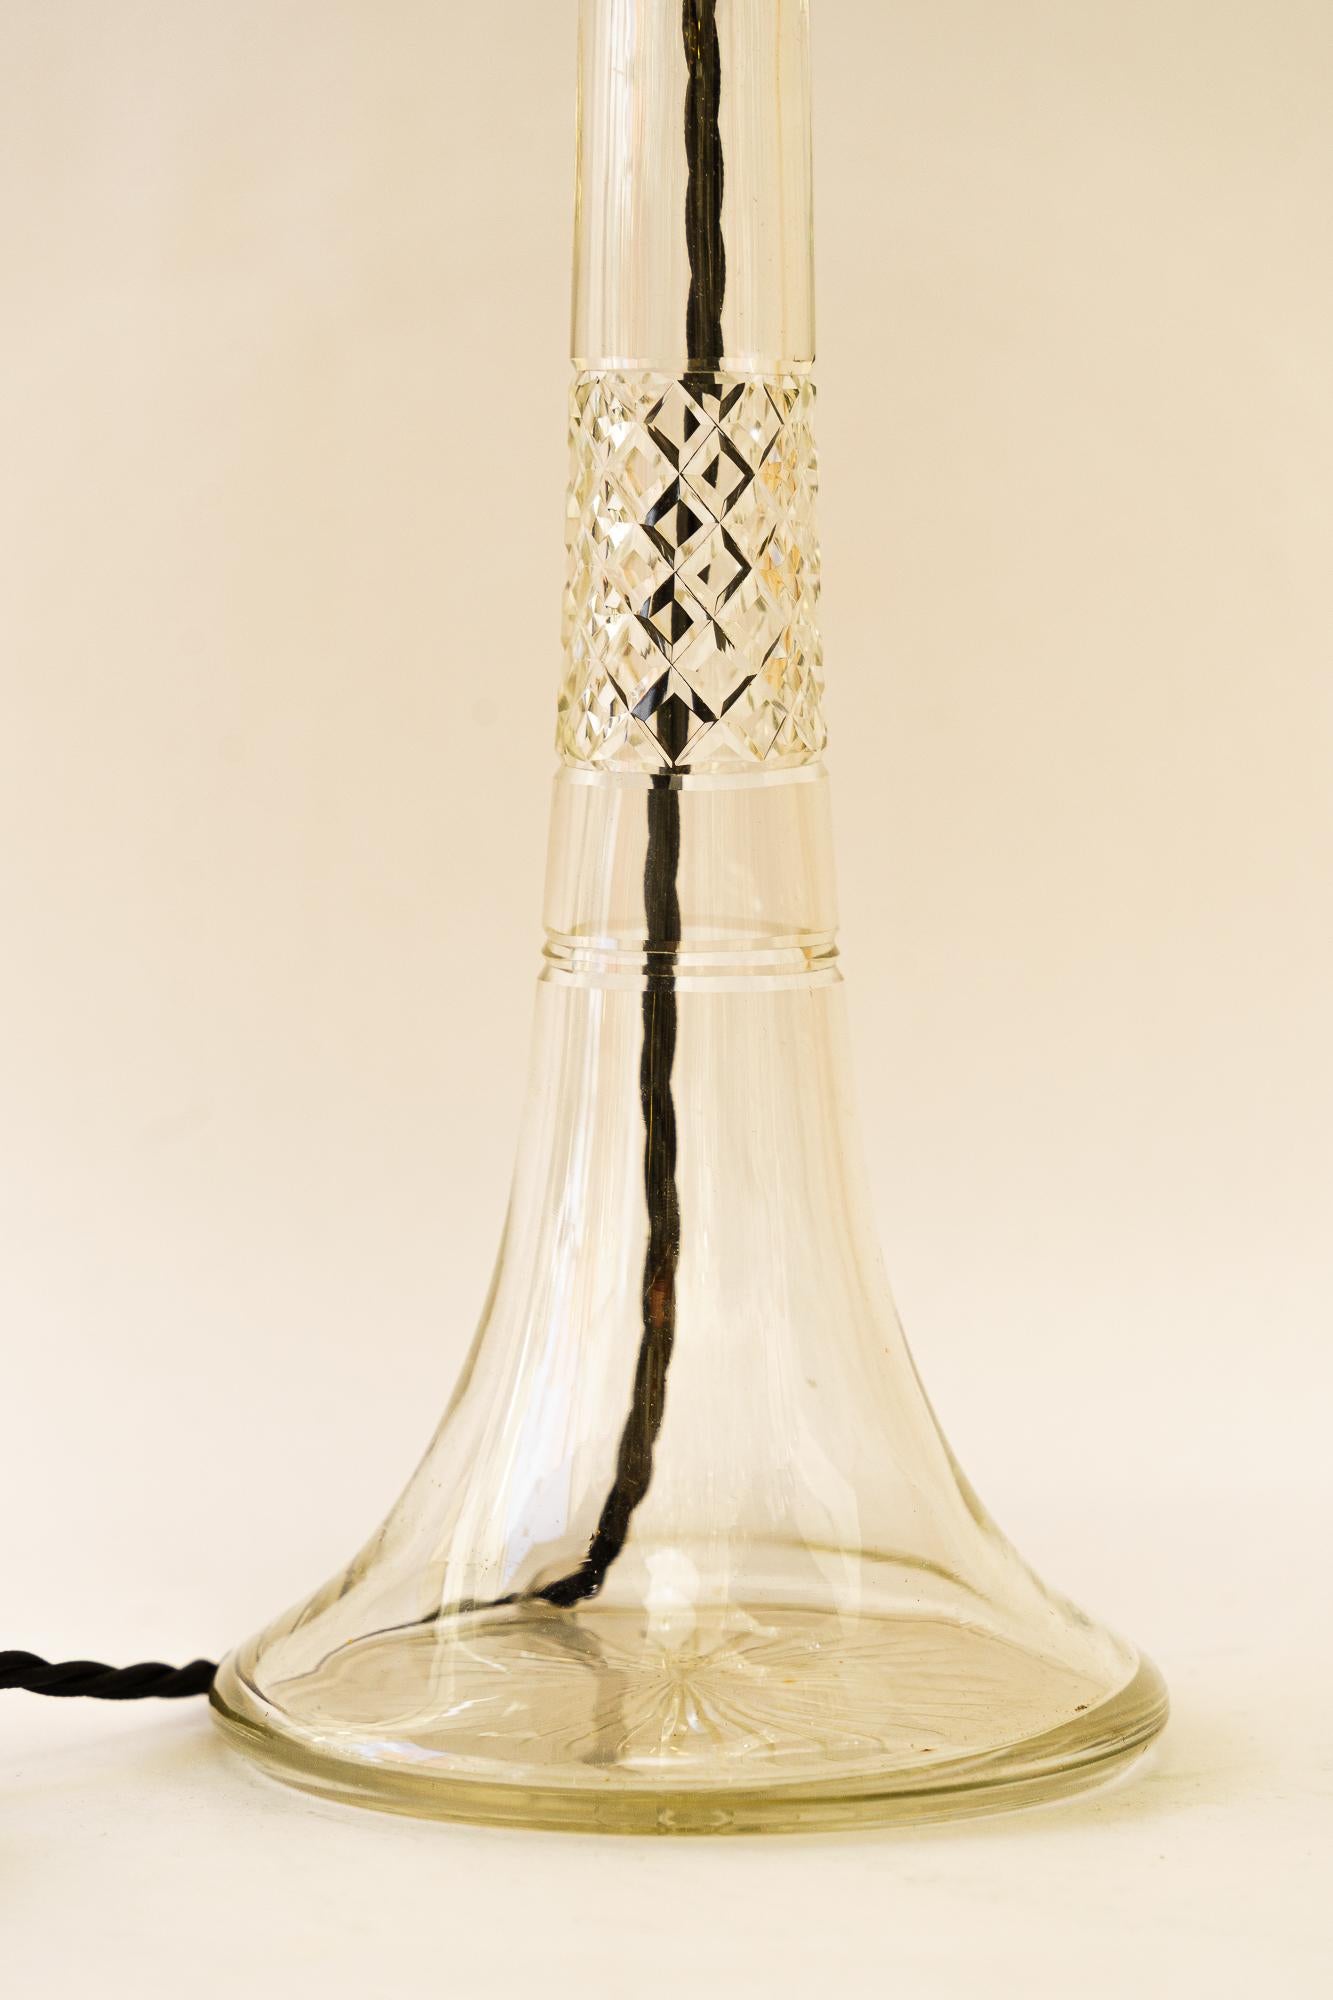 Bigli lampe de table Art Deco en verre avec abat-jour en tissu vienne vers 1920
Etat original
L'abat-jour est remplacé (nouveau).